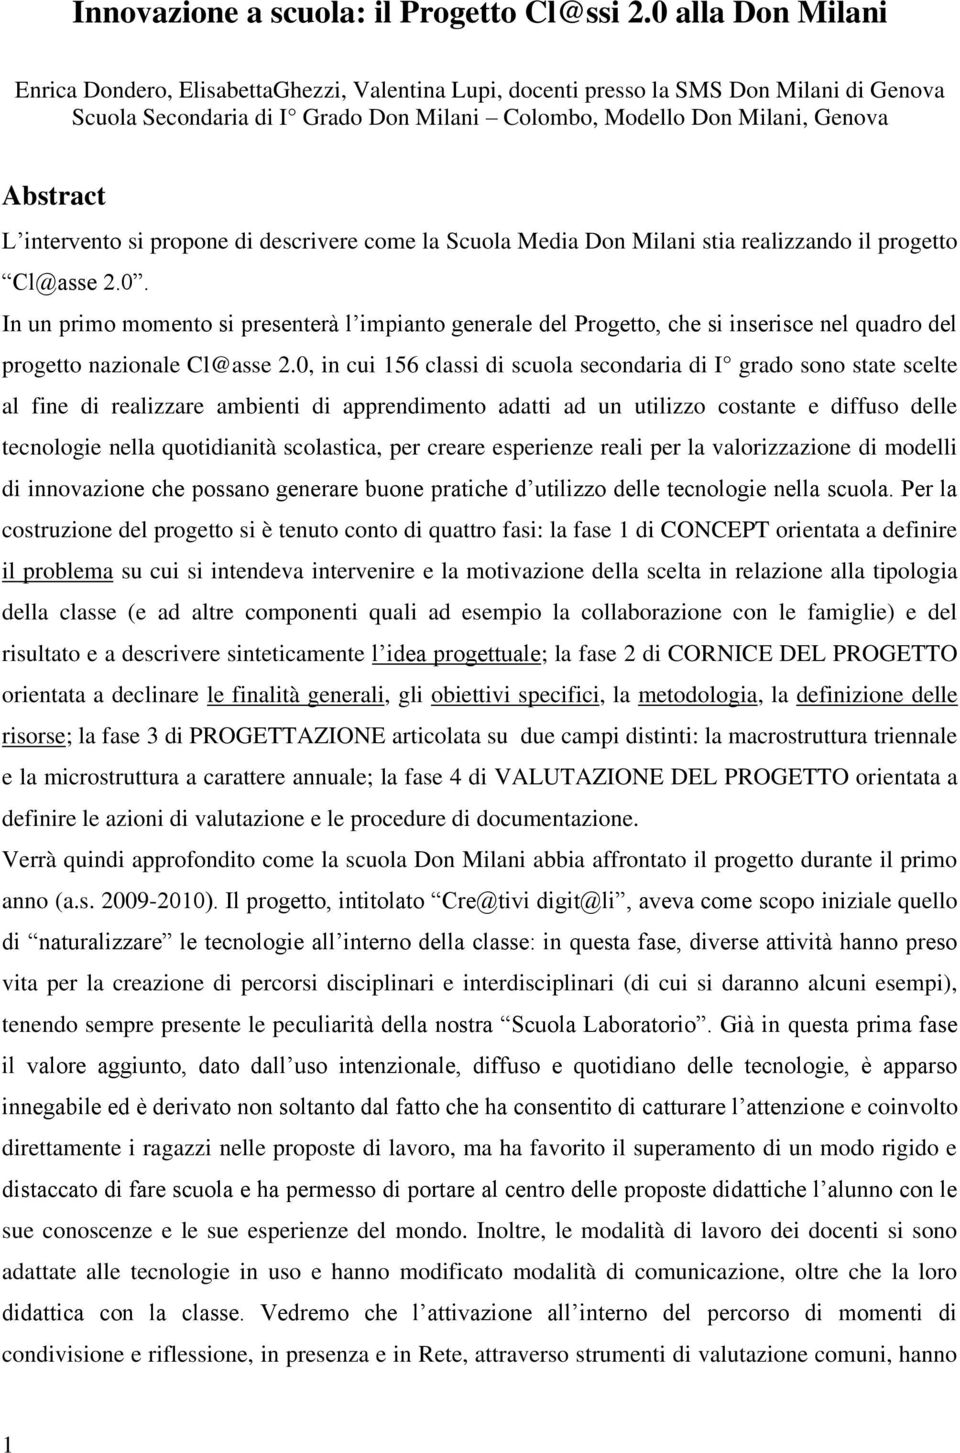 intervento si propone di descrivere come la Scuola Media Don Milani stia realizzando il progetto Cl@asse 2.0.